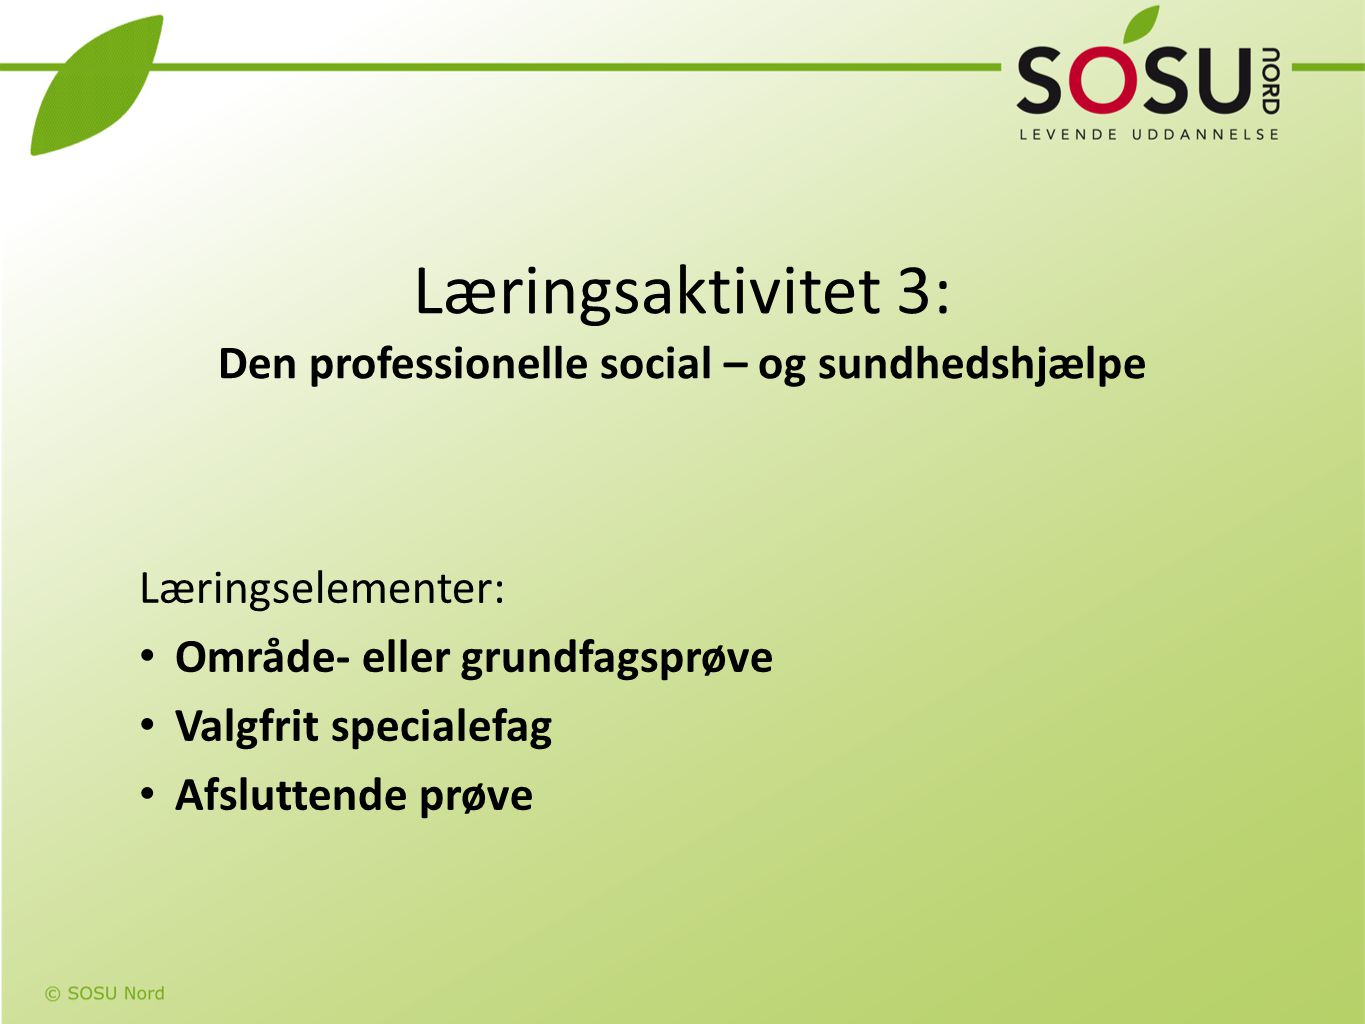 Læringsaktivitet 3: Den professionelle social – og sundhedshjælpe